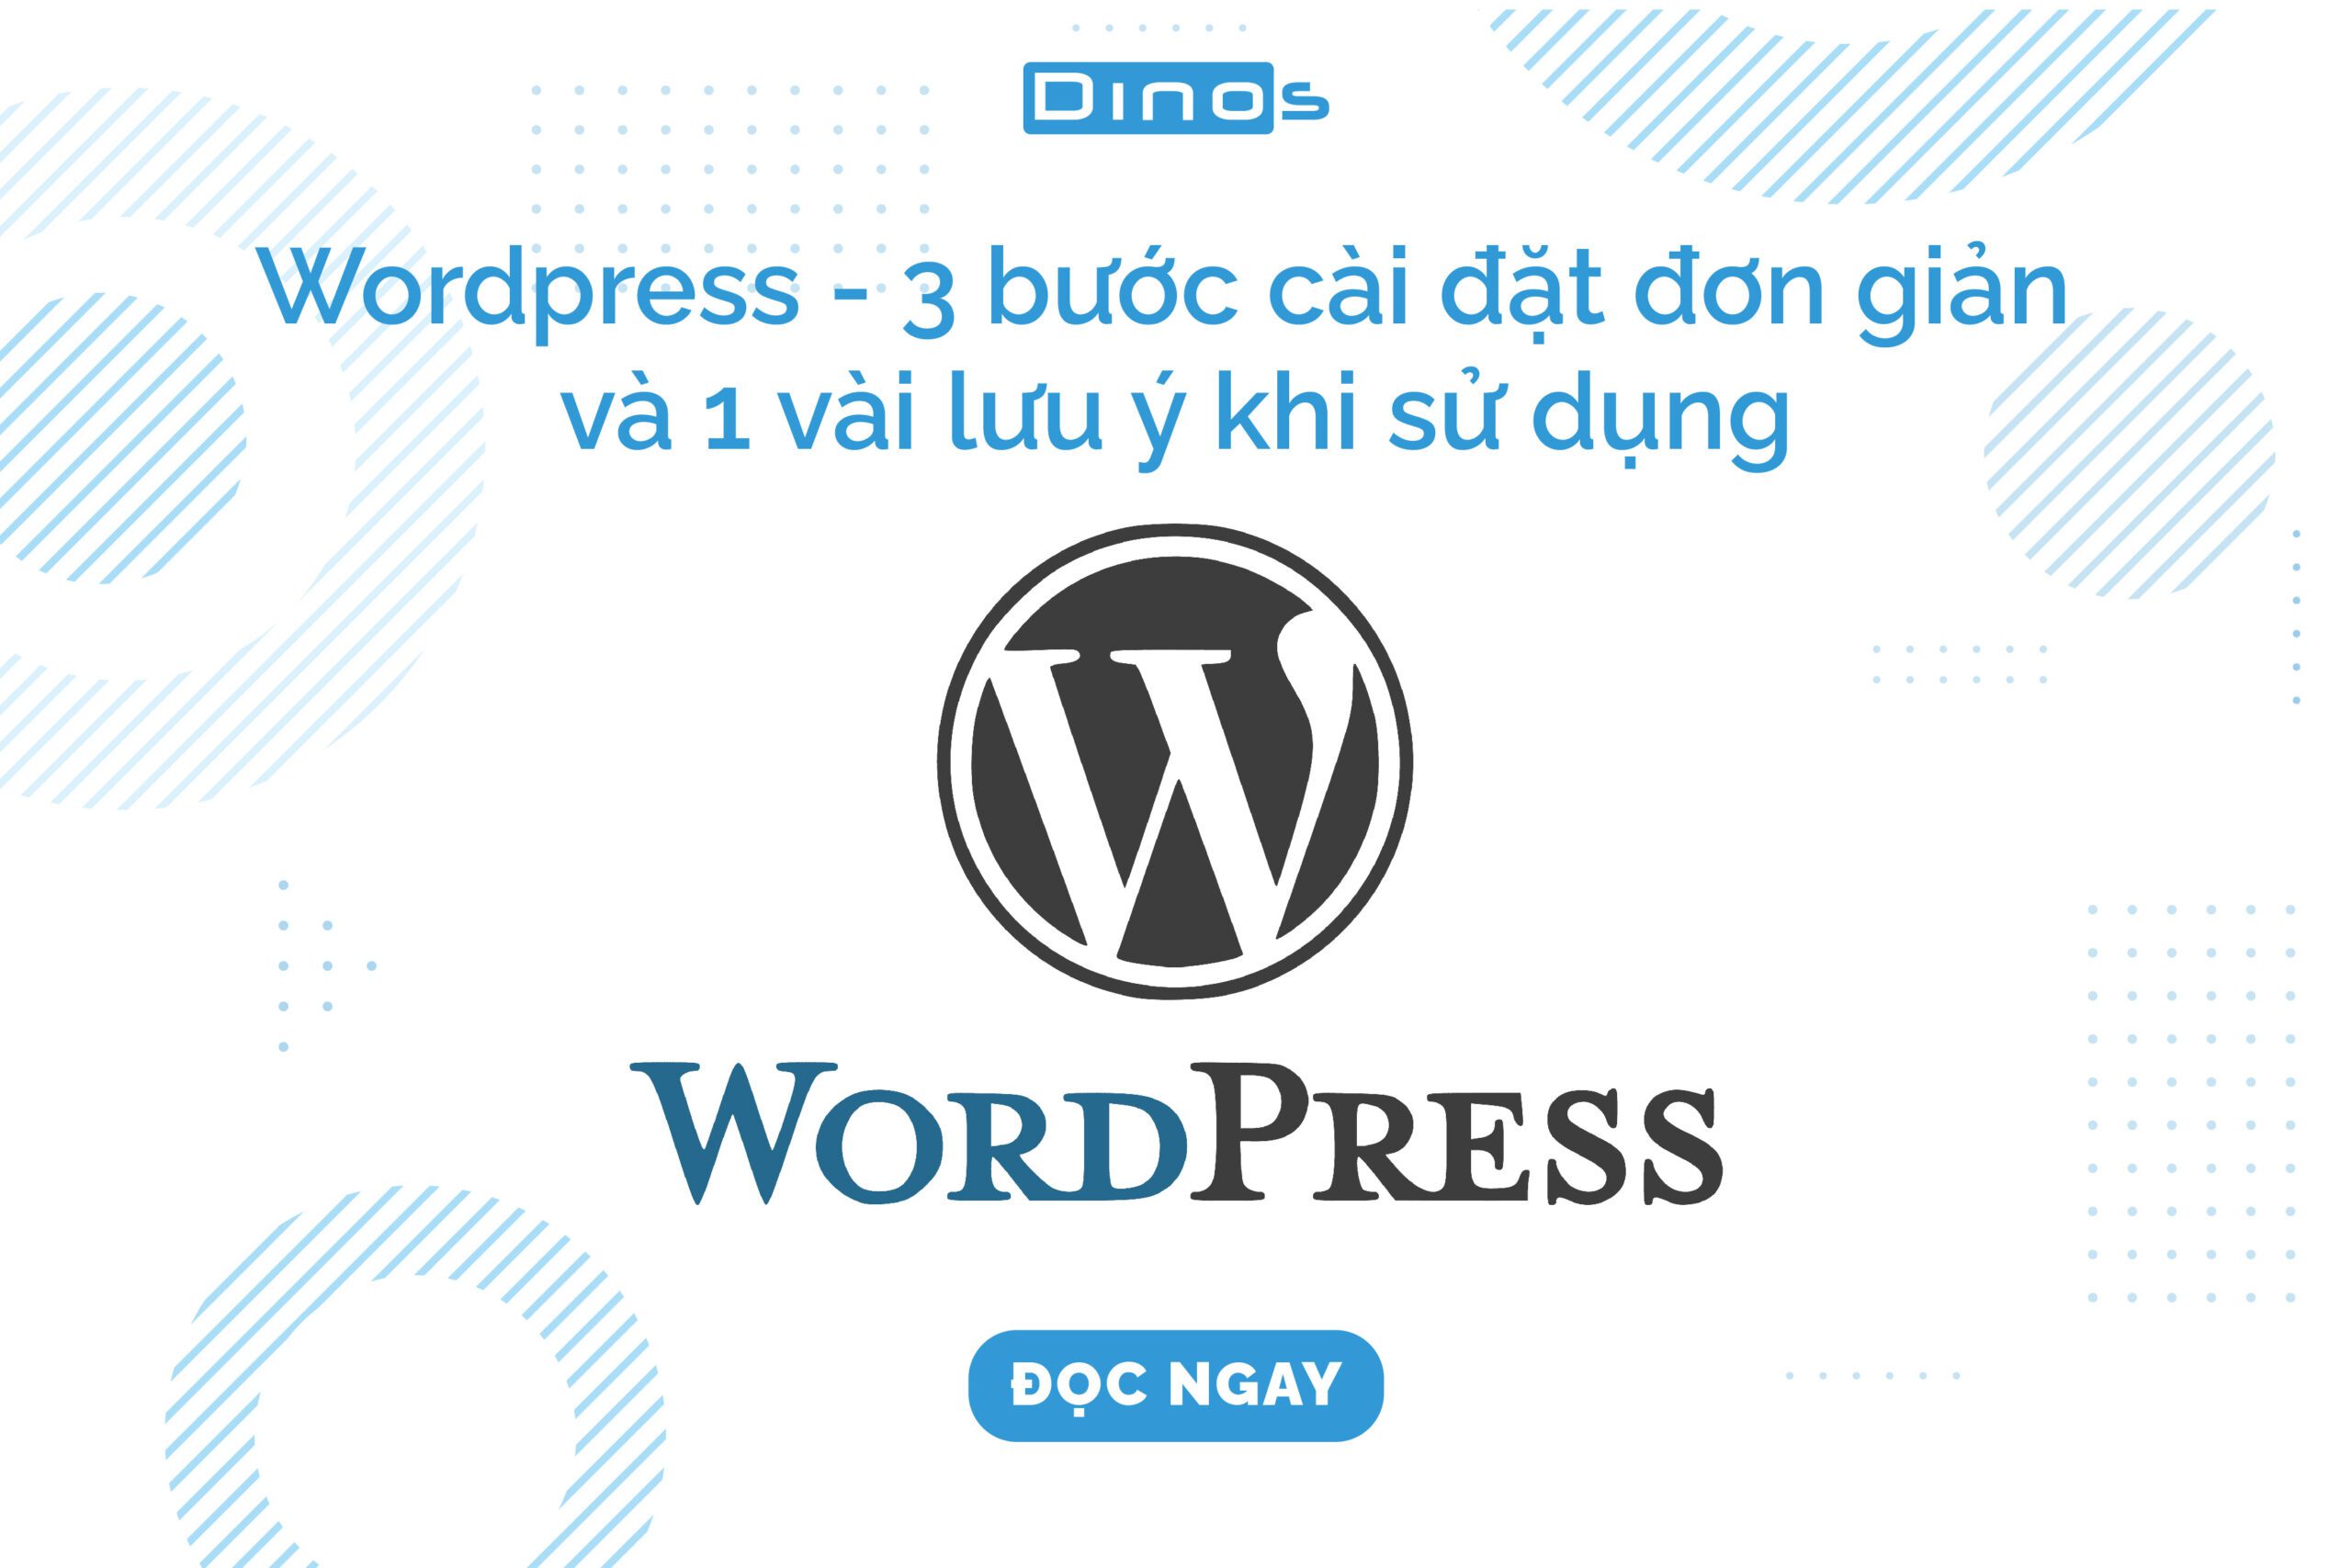 Wordpress - 3 bước cài đặt đơn giản và 1 vài lưu ý khi sử dụng